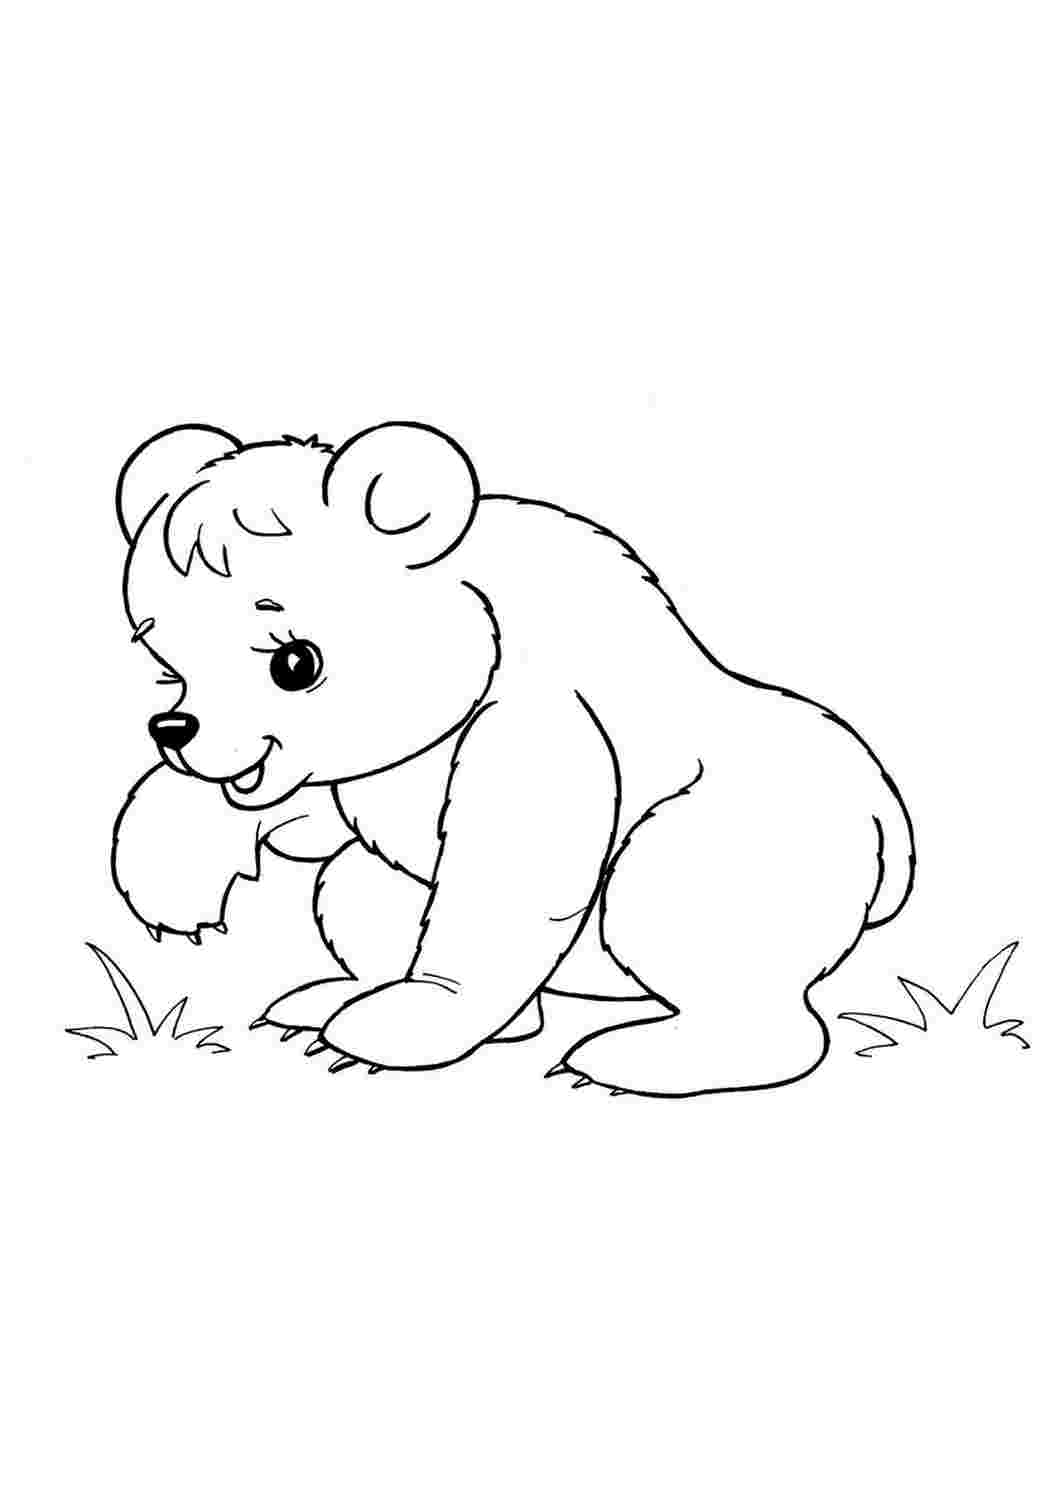 Раскраска для дошкольников животные. Раскраска. Медвежонок. Медведь раскраска. Раскраски животных для детей. Медведь раскраска для детей.